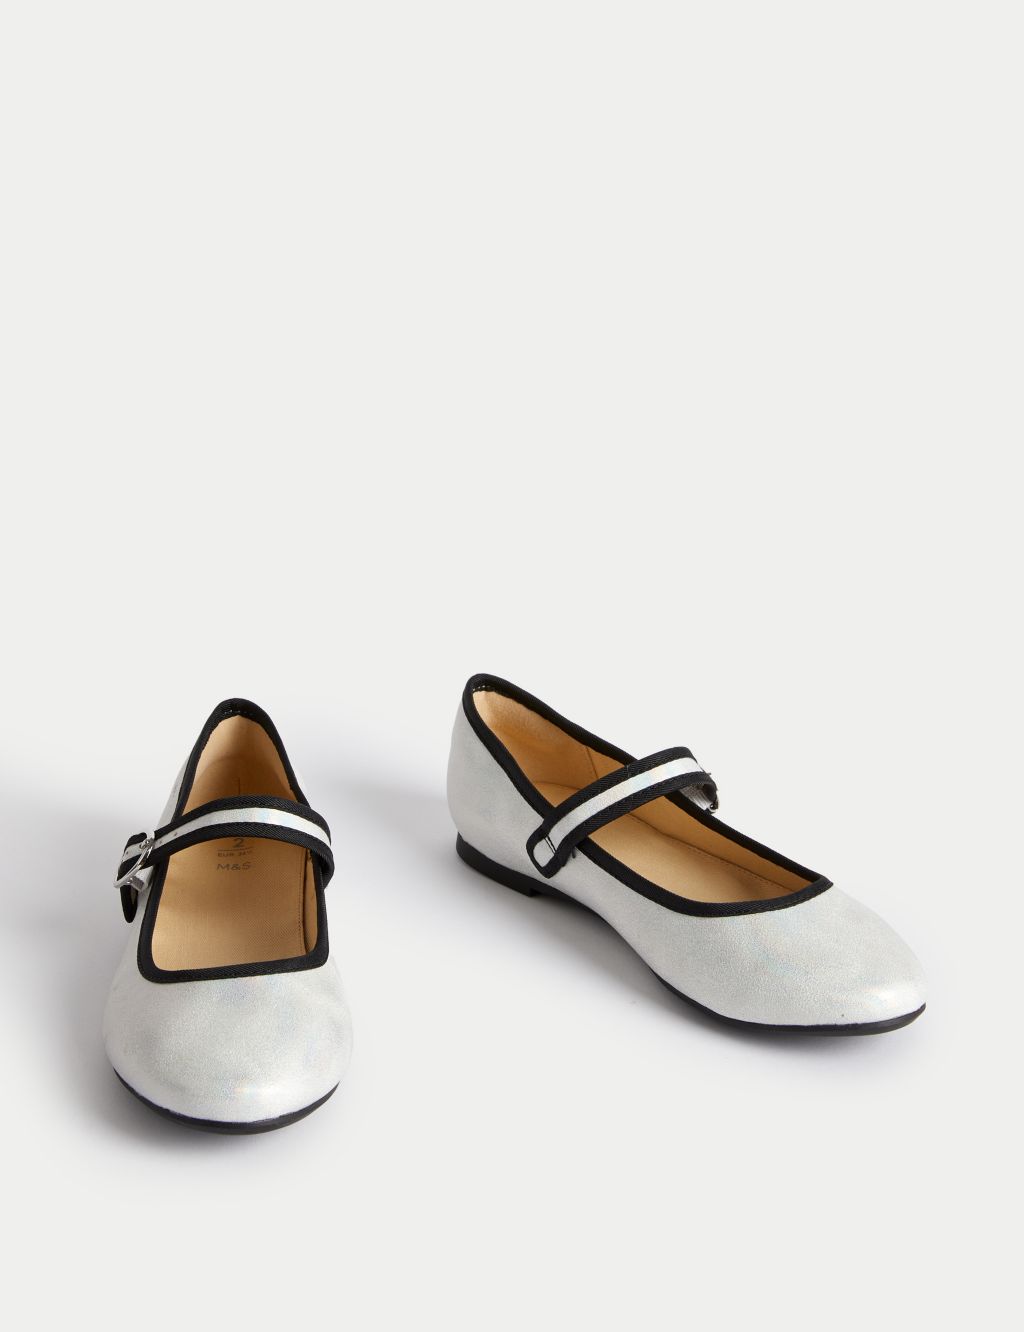 Kids' Mary Jane Shoes (1 Large - 6 Large) image 2